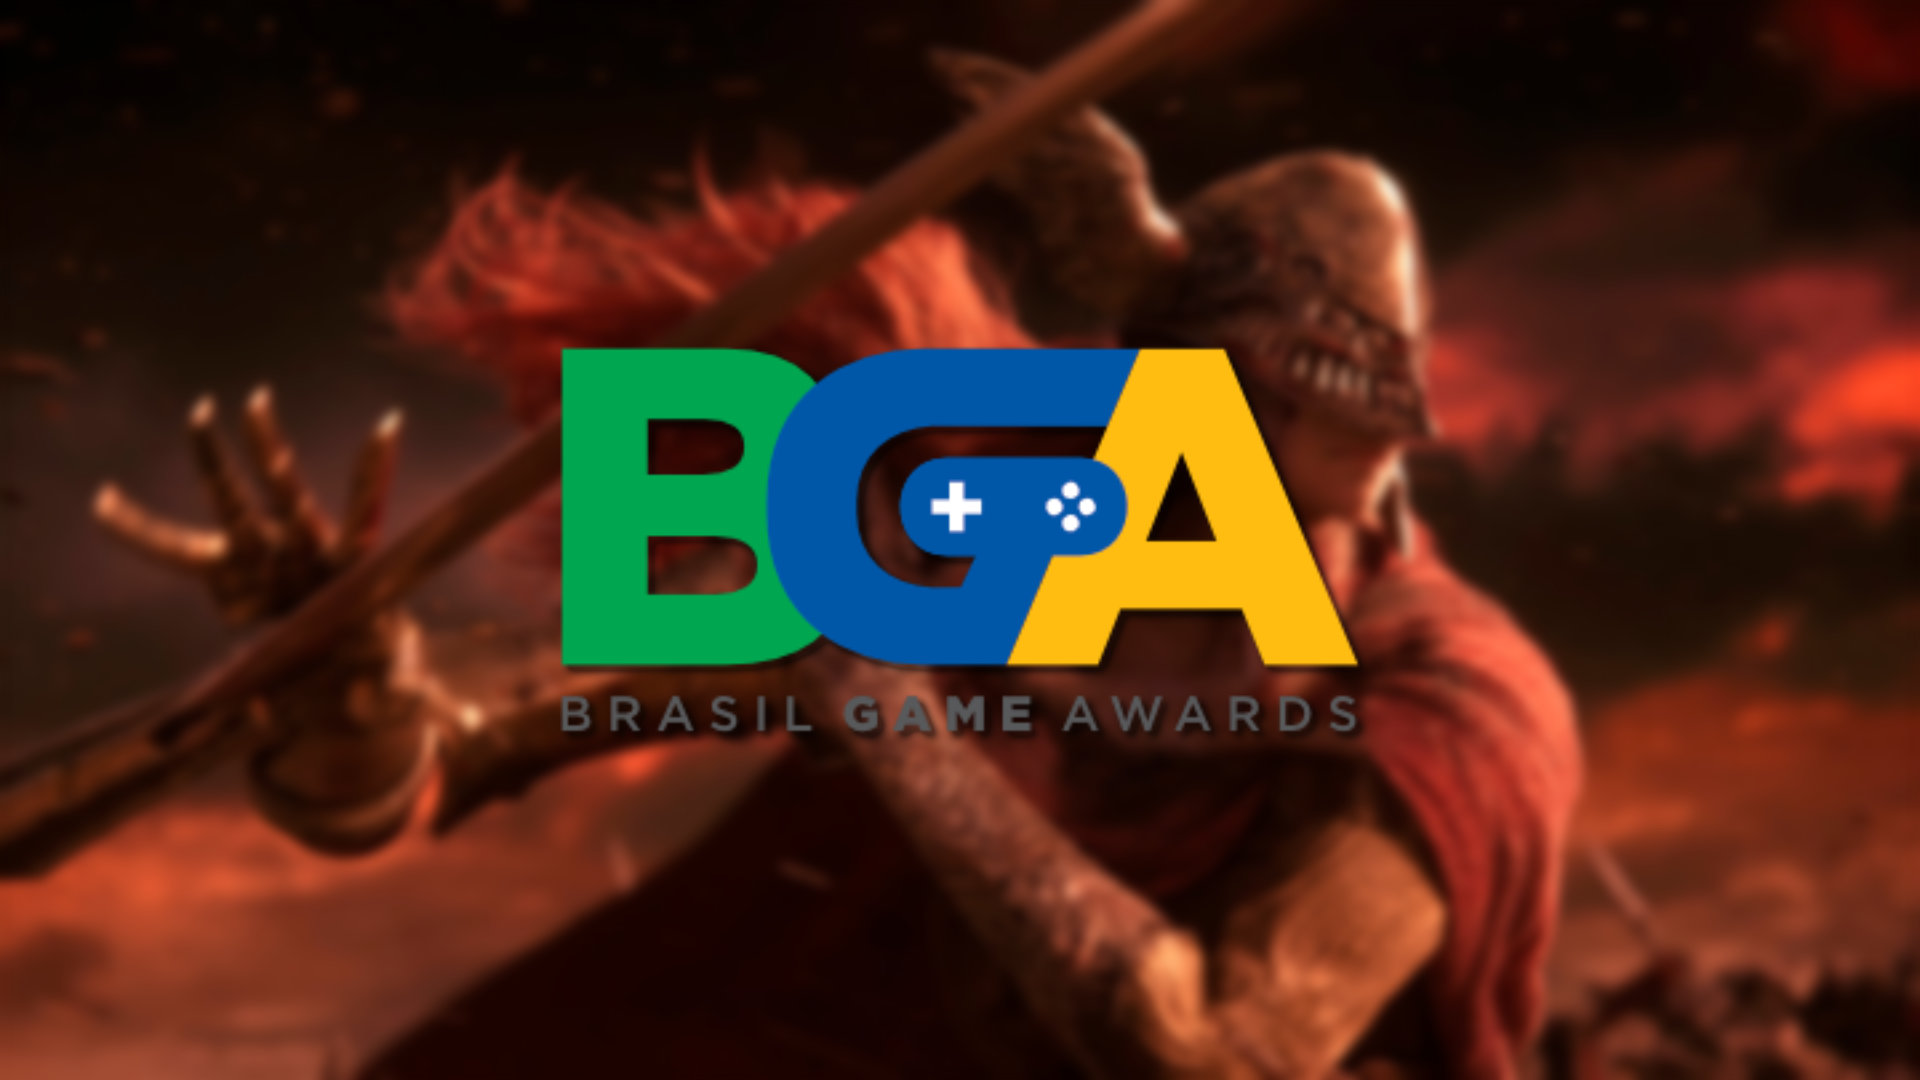 Brazil Game Awards